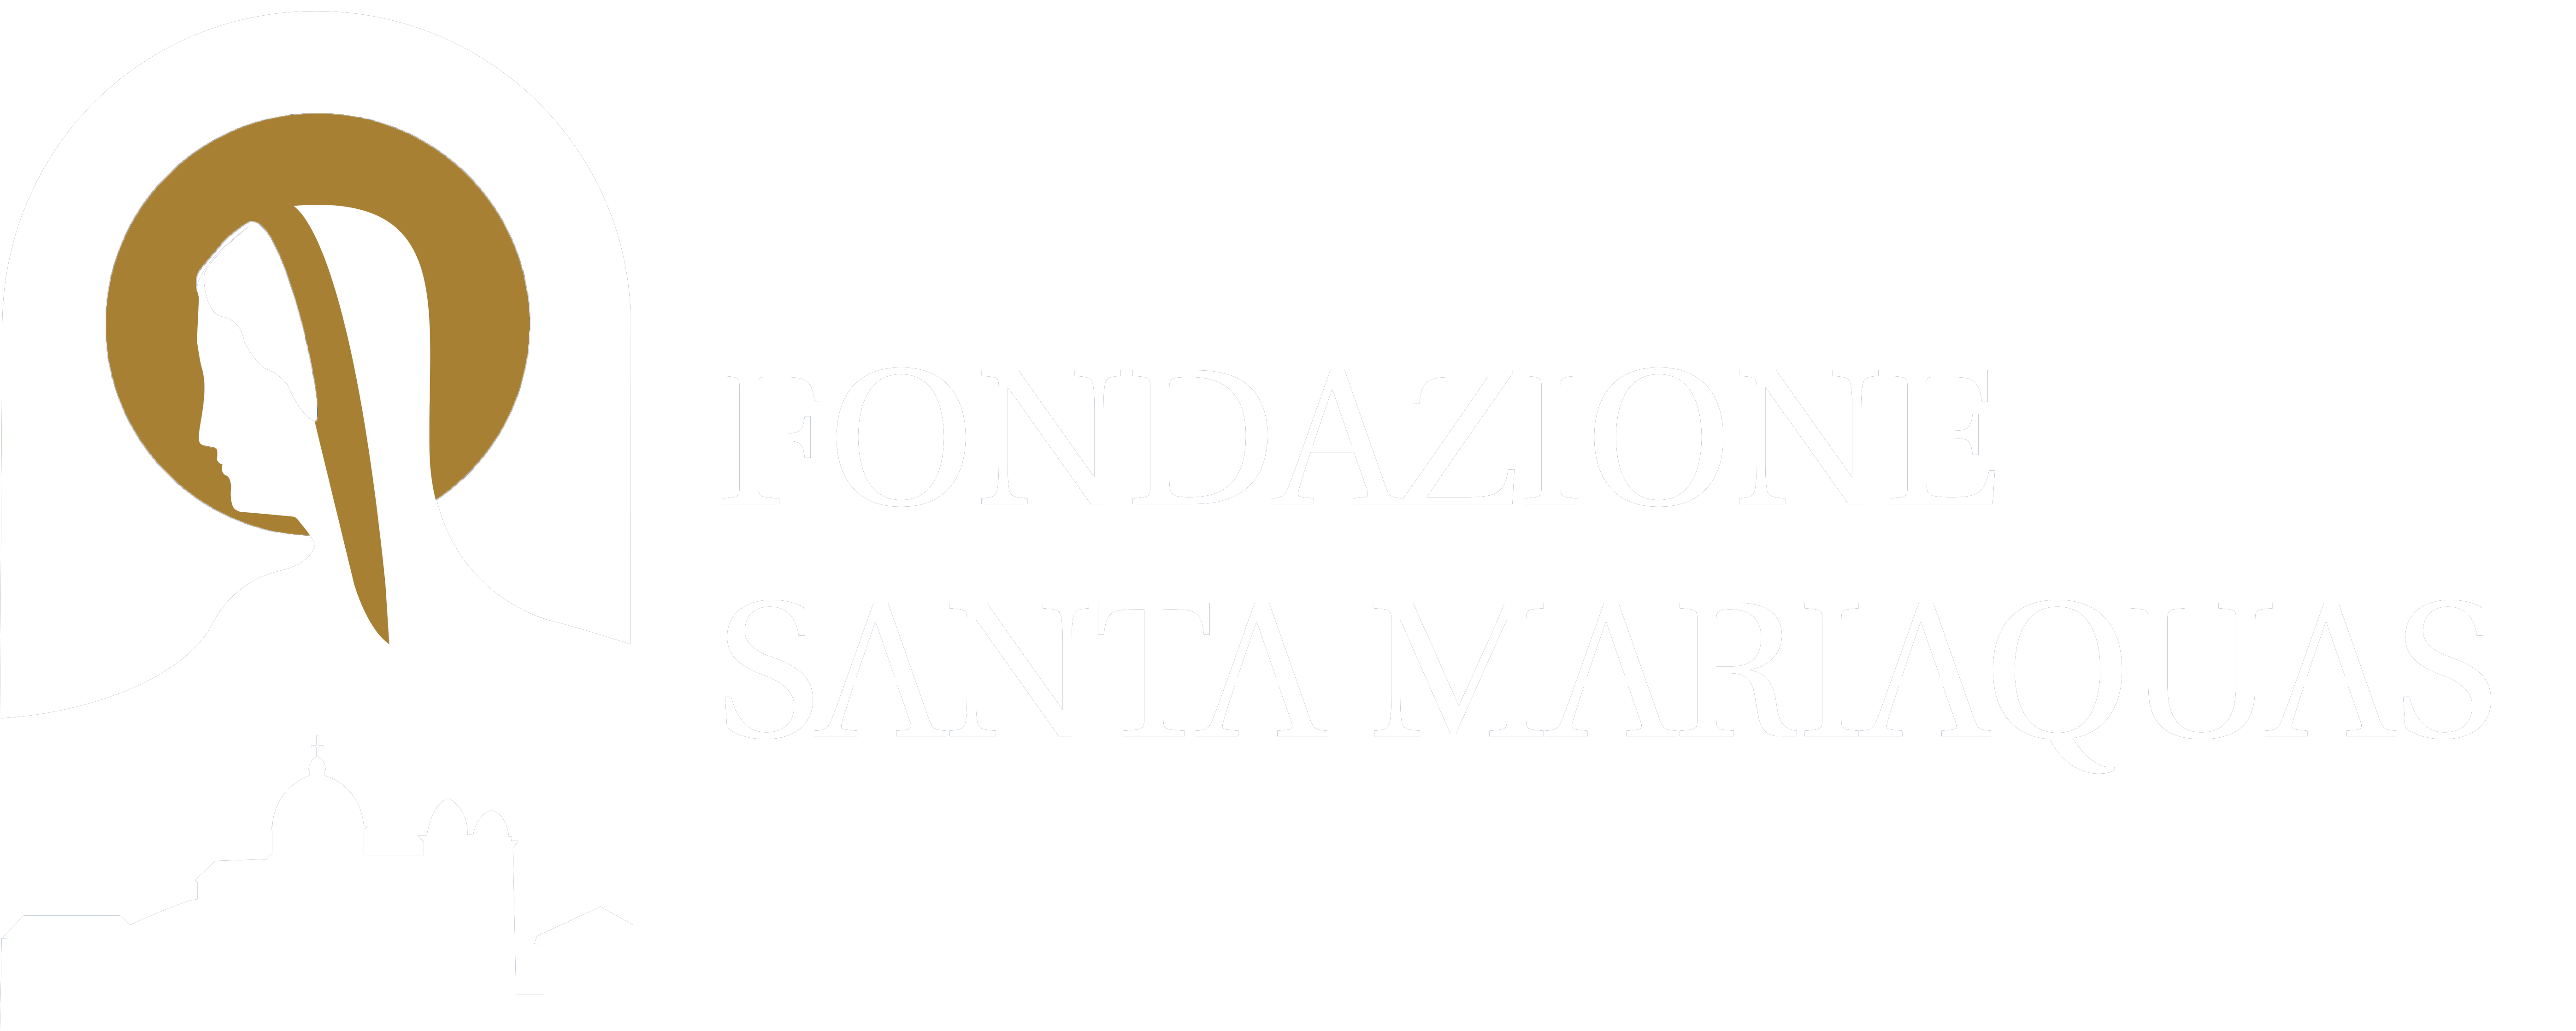 Fondazione Santa Mariaquas